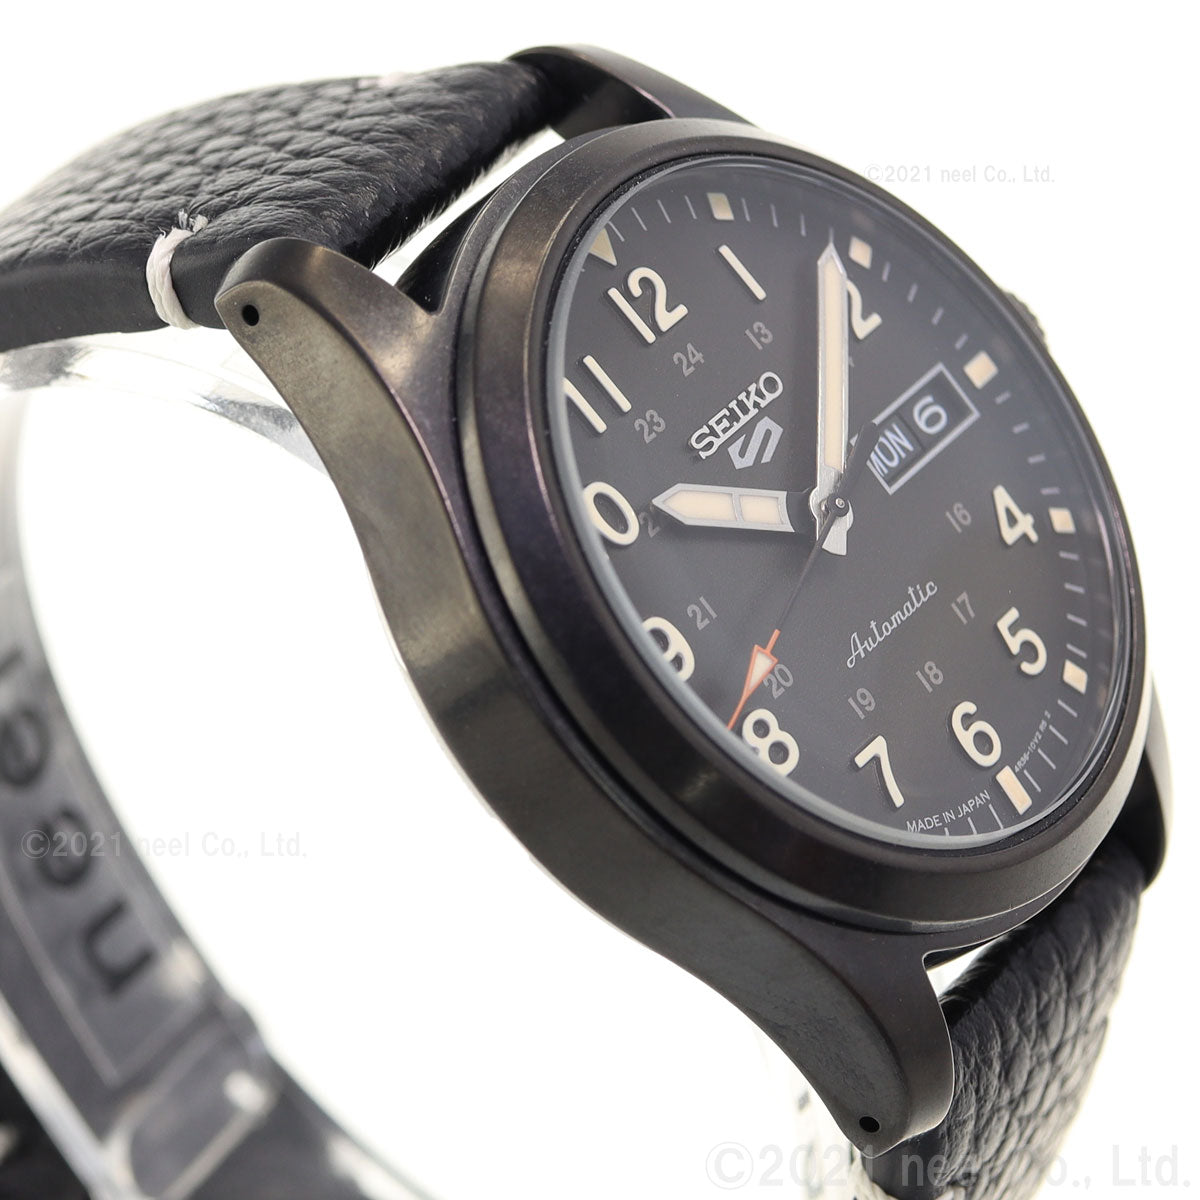 セイコー5 スポーツ SEIKO 5 SPORTS 自動巻き 流通限定 腕時計 メンズ セイコーファイブ SBSA121